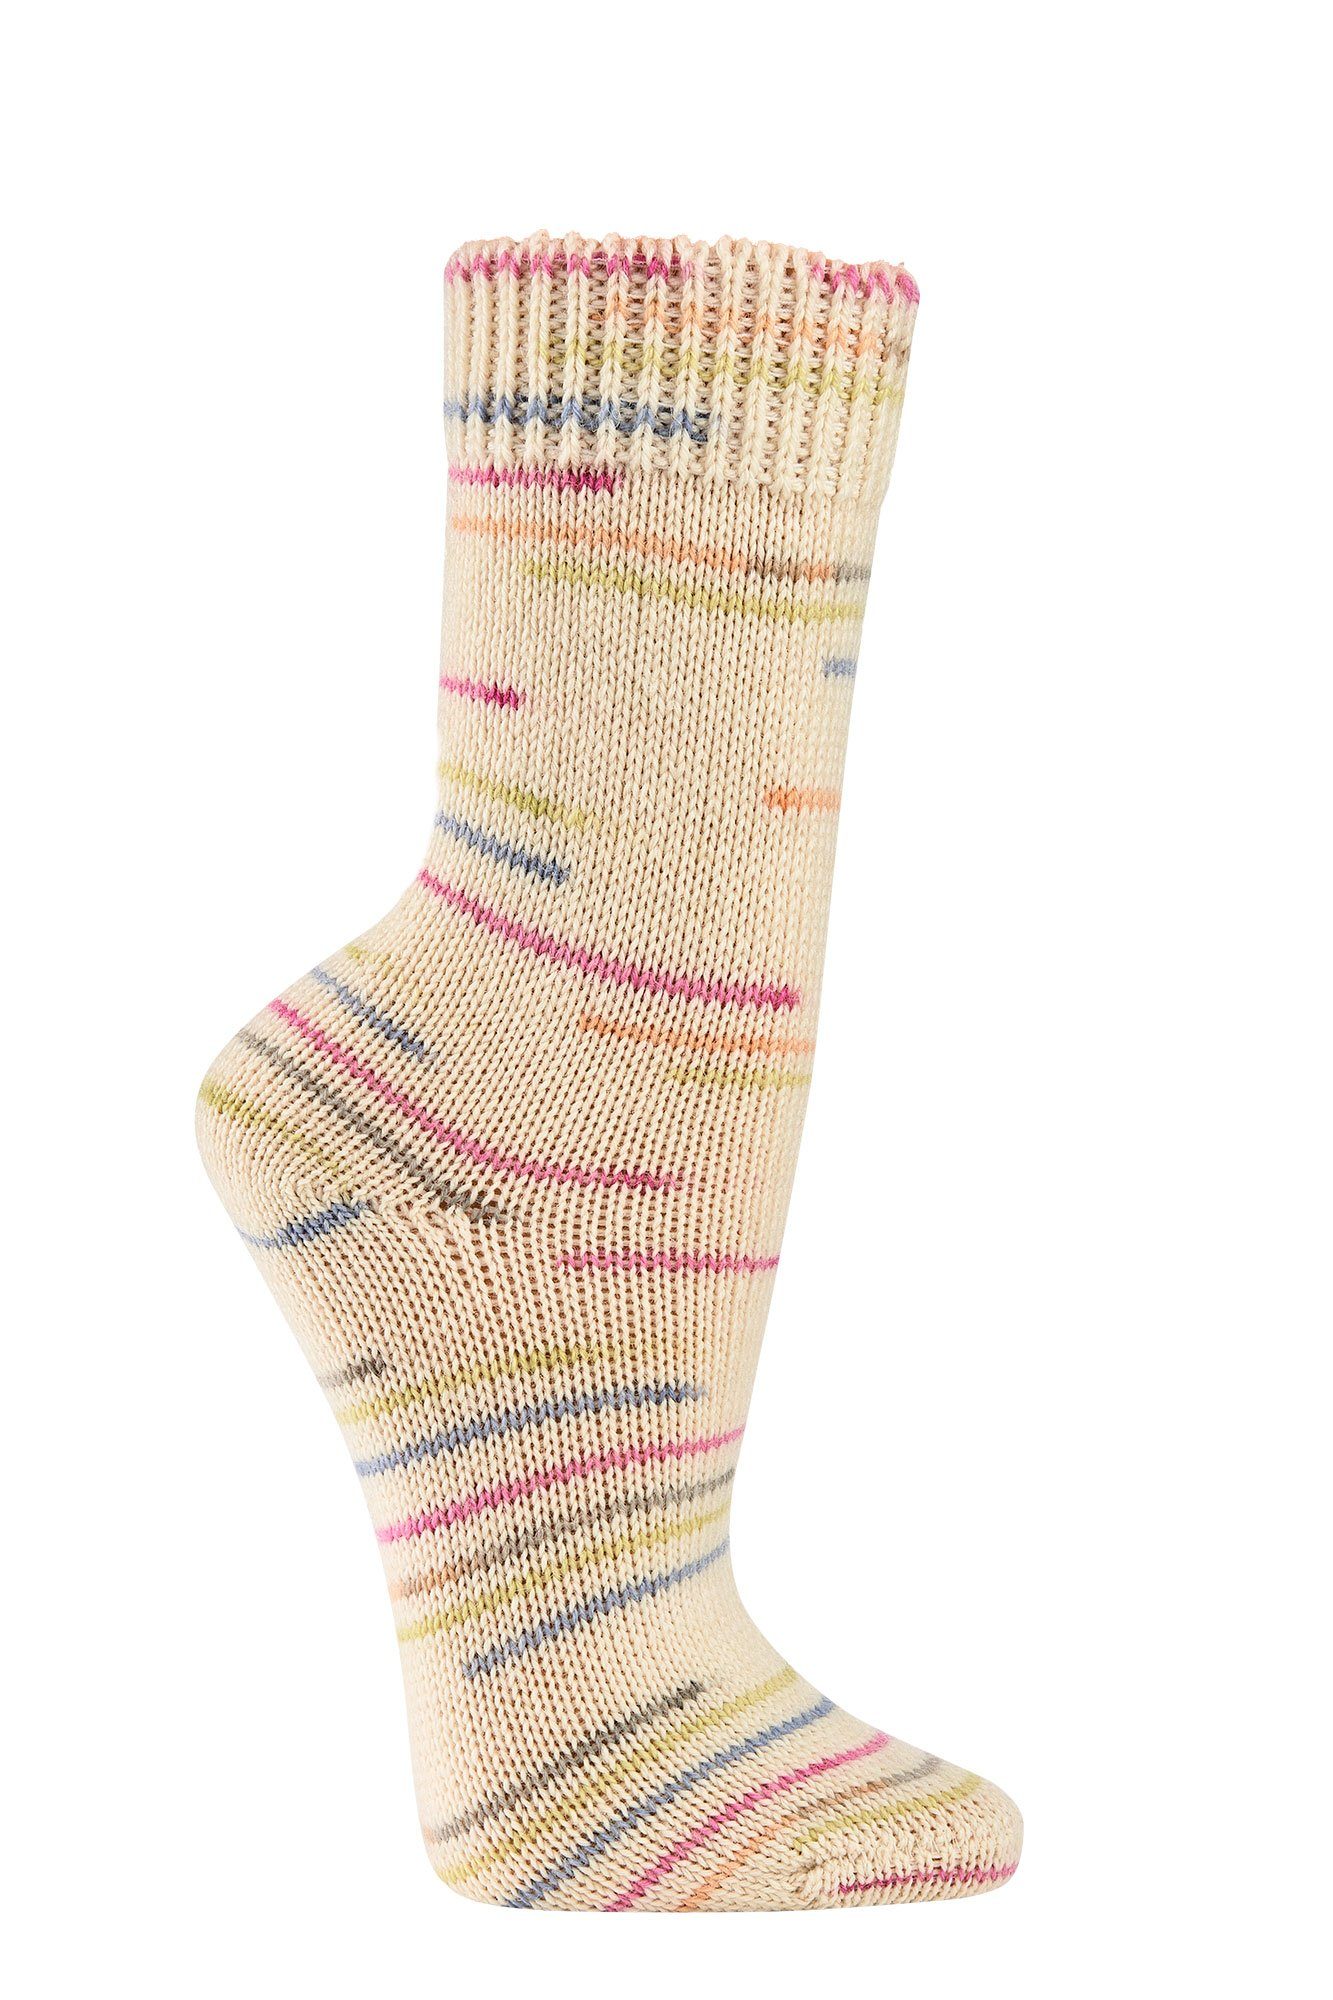 Wowerat Socken Wollsocken mit Farben (2 gestrickt von Paar) wie Farbverlaufgarn 70% schöne viele Oma Wolle